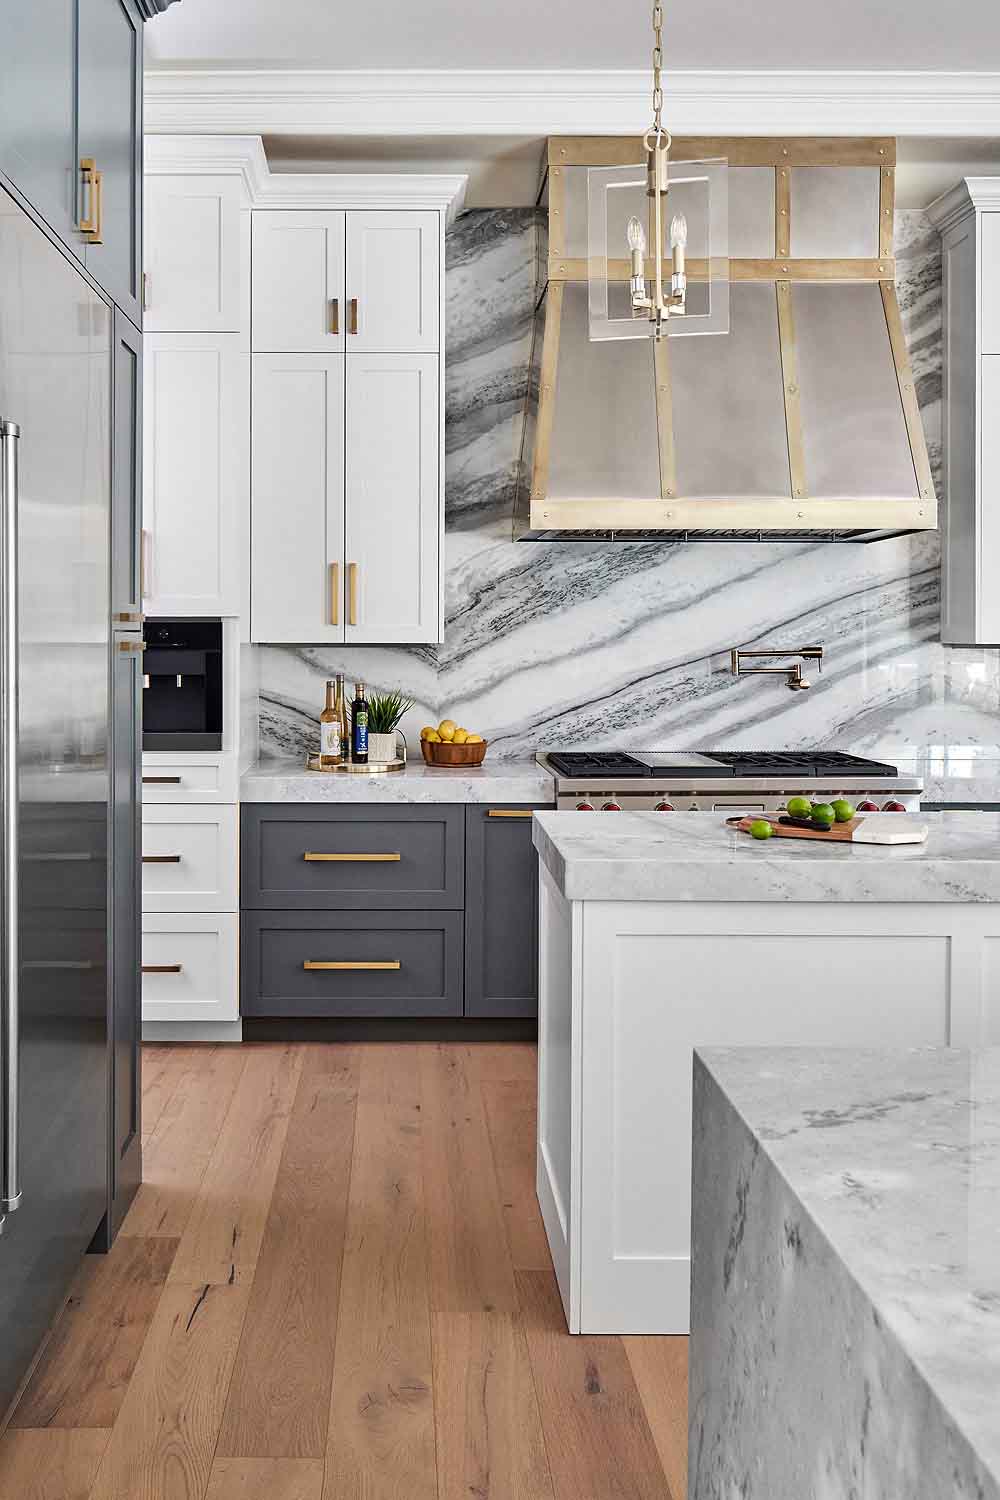 کابینت سفید طوسی مات در آشپزخانه نئوکلاسیک با بین کابینتی و روکابینتی طرح مرمر سفید طوسی